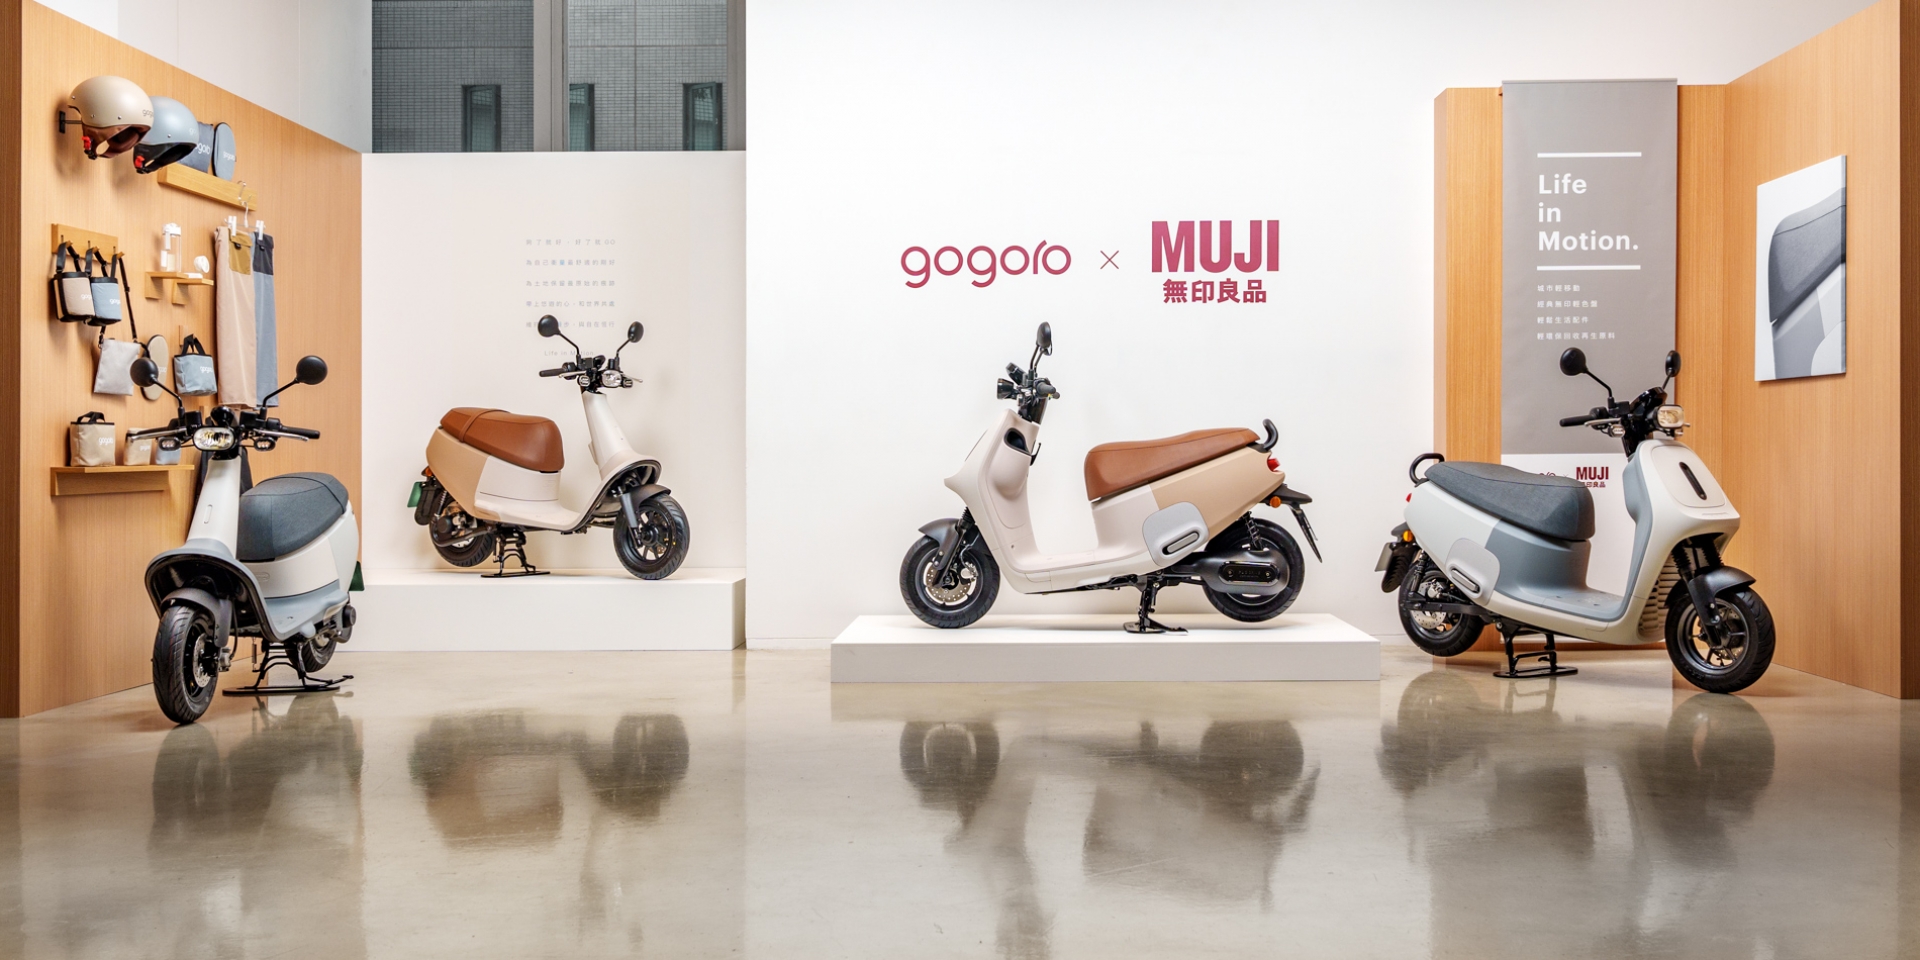 日本設計師深澤直人操刀，原色灰、原色棕新色！Gogoro ｘ MUJI無印良品聯名系列上市 